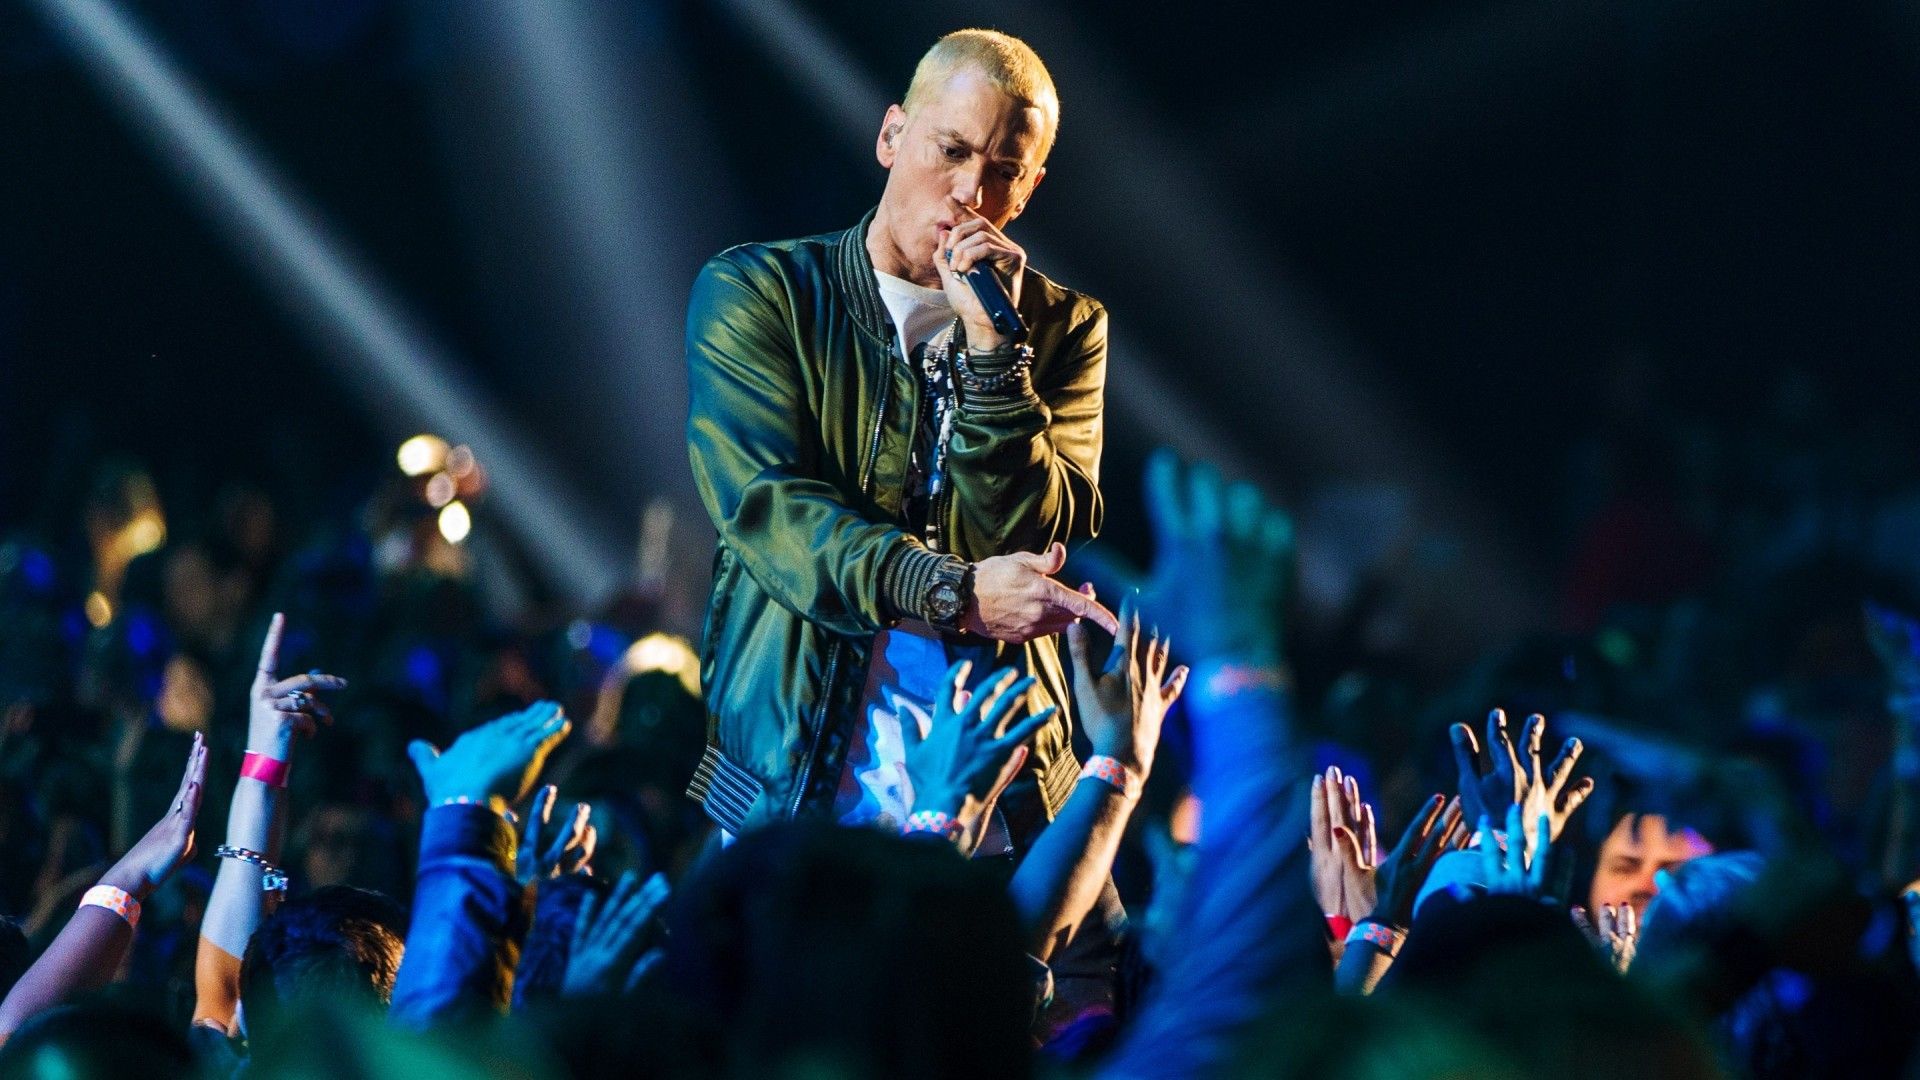 Nếu bạn là một fan hâm mộ của Eminem, không gì đáng để yêu cầu hơn một tấm hình nền cho chiếc laptop thân yêu của mình như thế này. Mỗi lần khởi động máy tính sẽ trở nên thú vị hơn với những hình ảnh đầy năng lượng và sáng tạo do các fan tạo ra. Hãy cùng đến với \